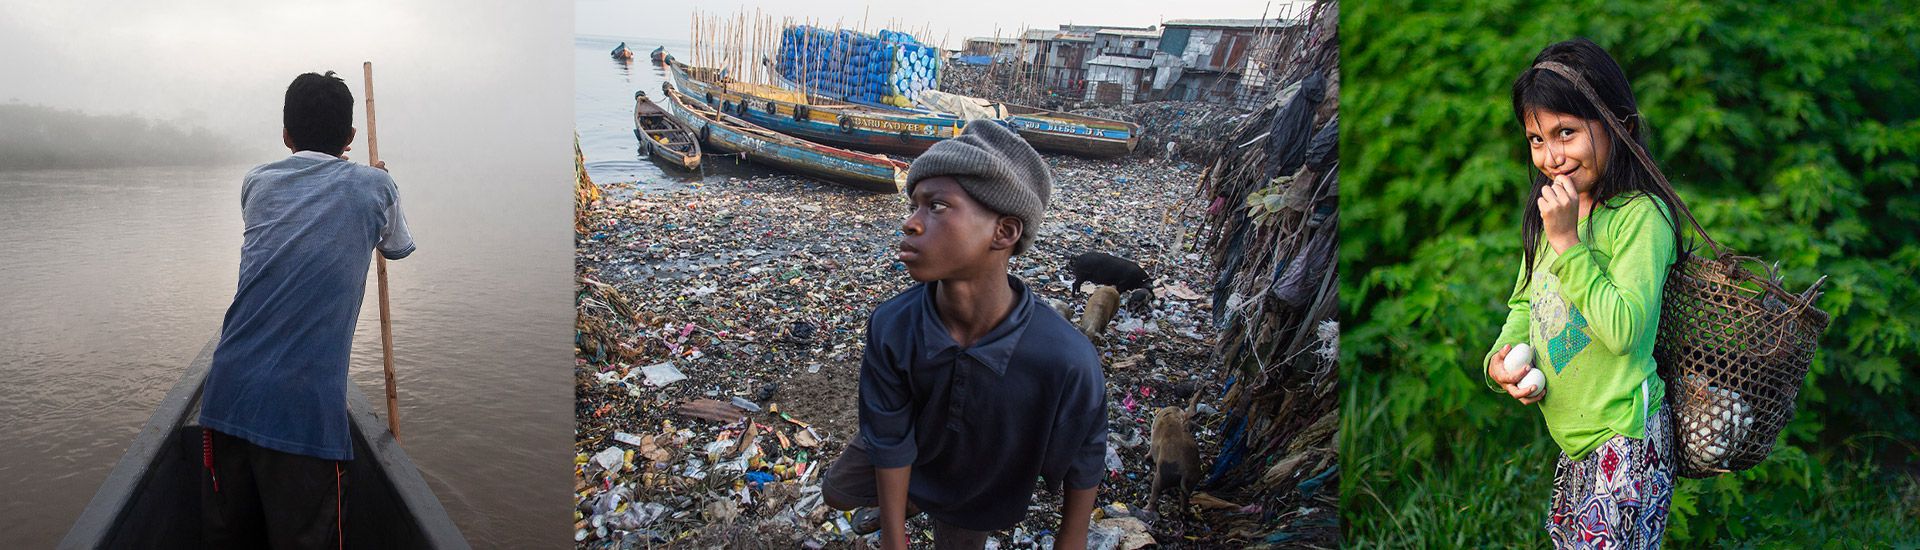 El Día Mundial del Medio Ambiente pone el foco en la contaminación por plásticos en el mundo